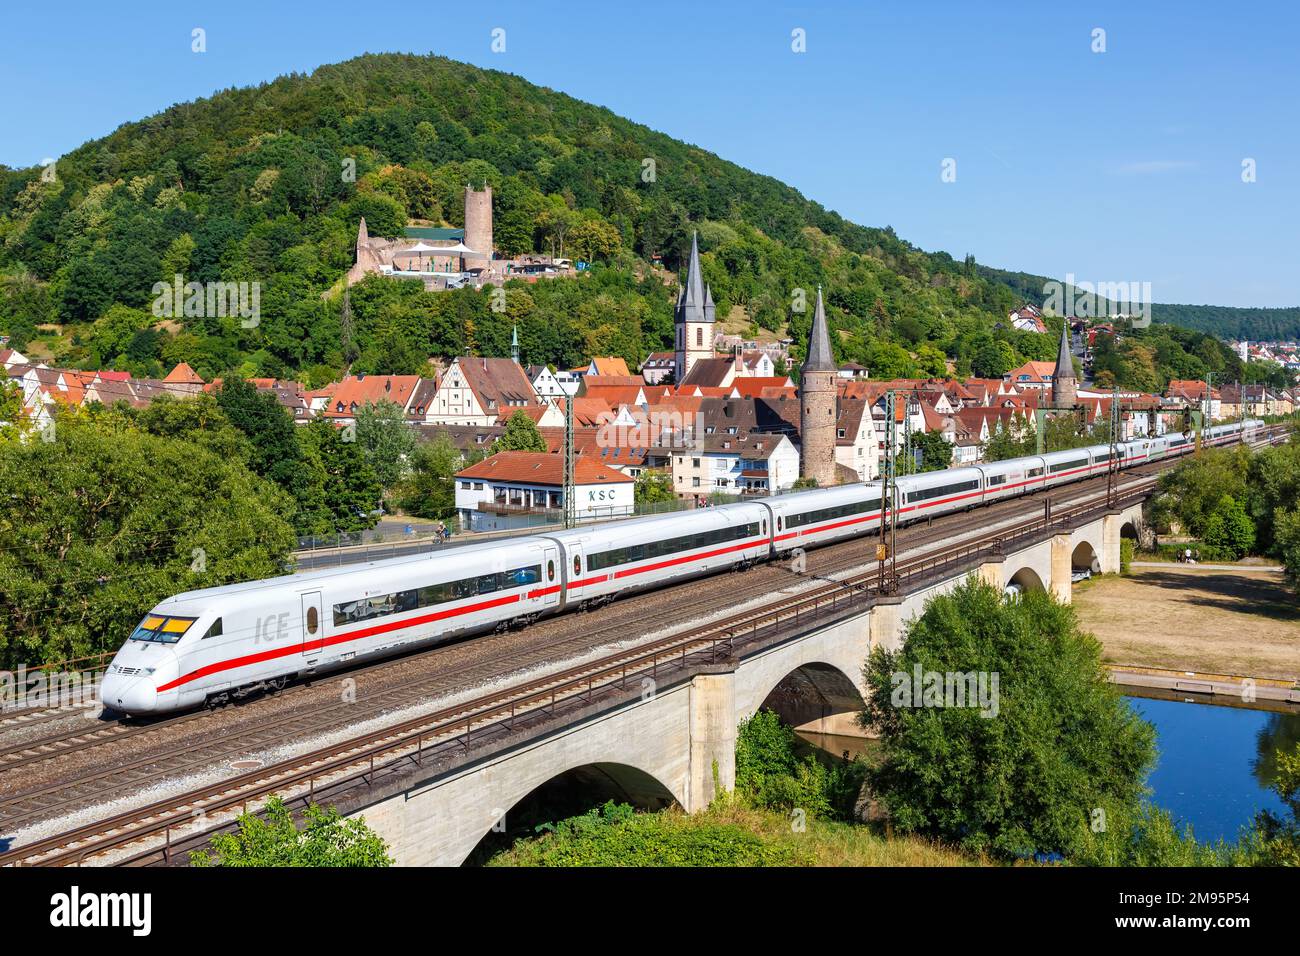 Gemuenden am Main, Germany - August 3, 2022: ICE 2 of Deutsche Bahn DB high-speed train railway in Gemuenden am Main, Germany. Stock Photo